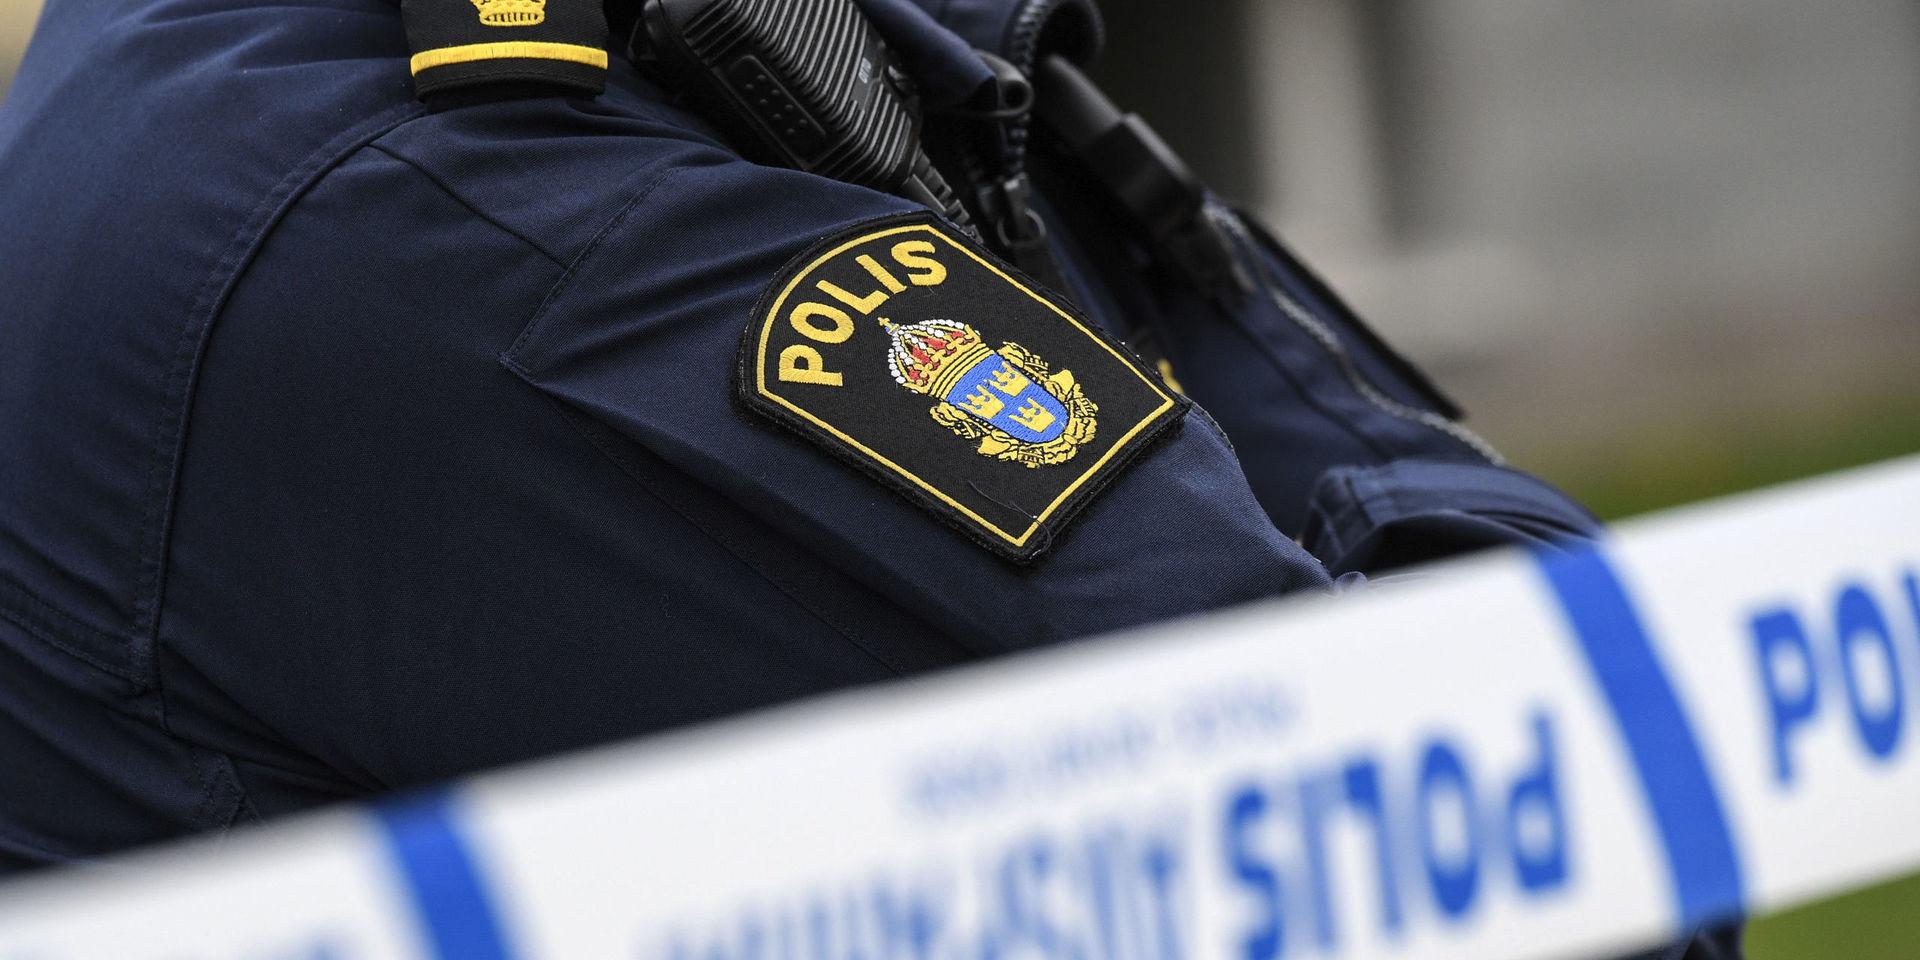 Två män har blivit skjutna på en restaurang i Laholm under fredagskvällen. Polisen utreder händelsen som försök till mord. 